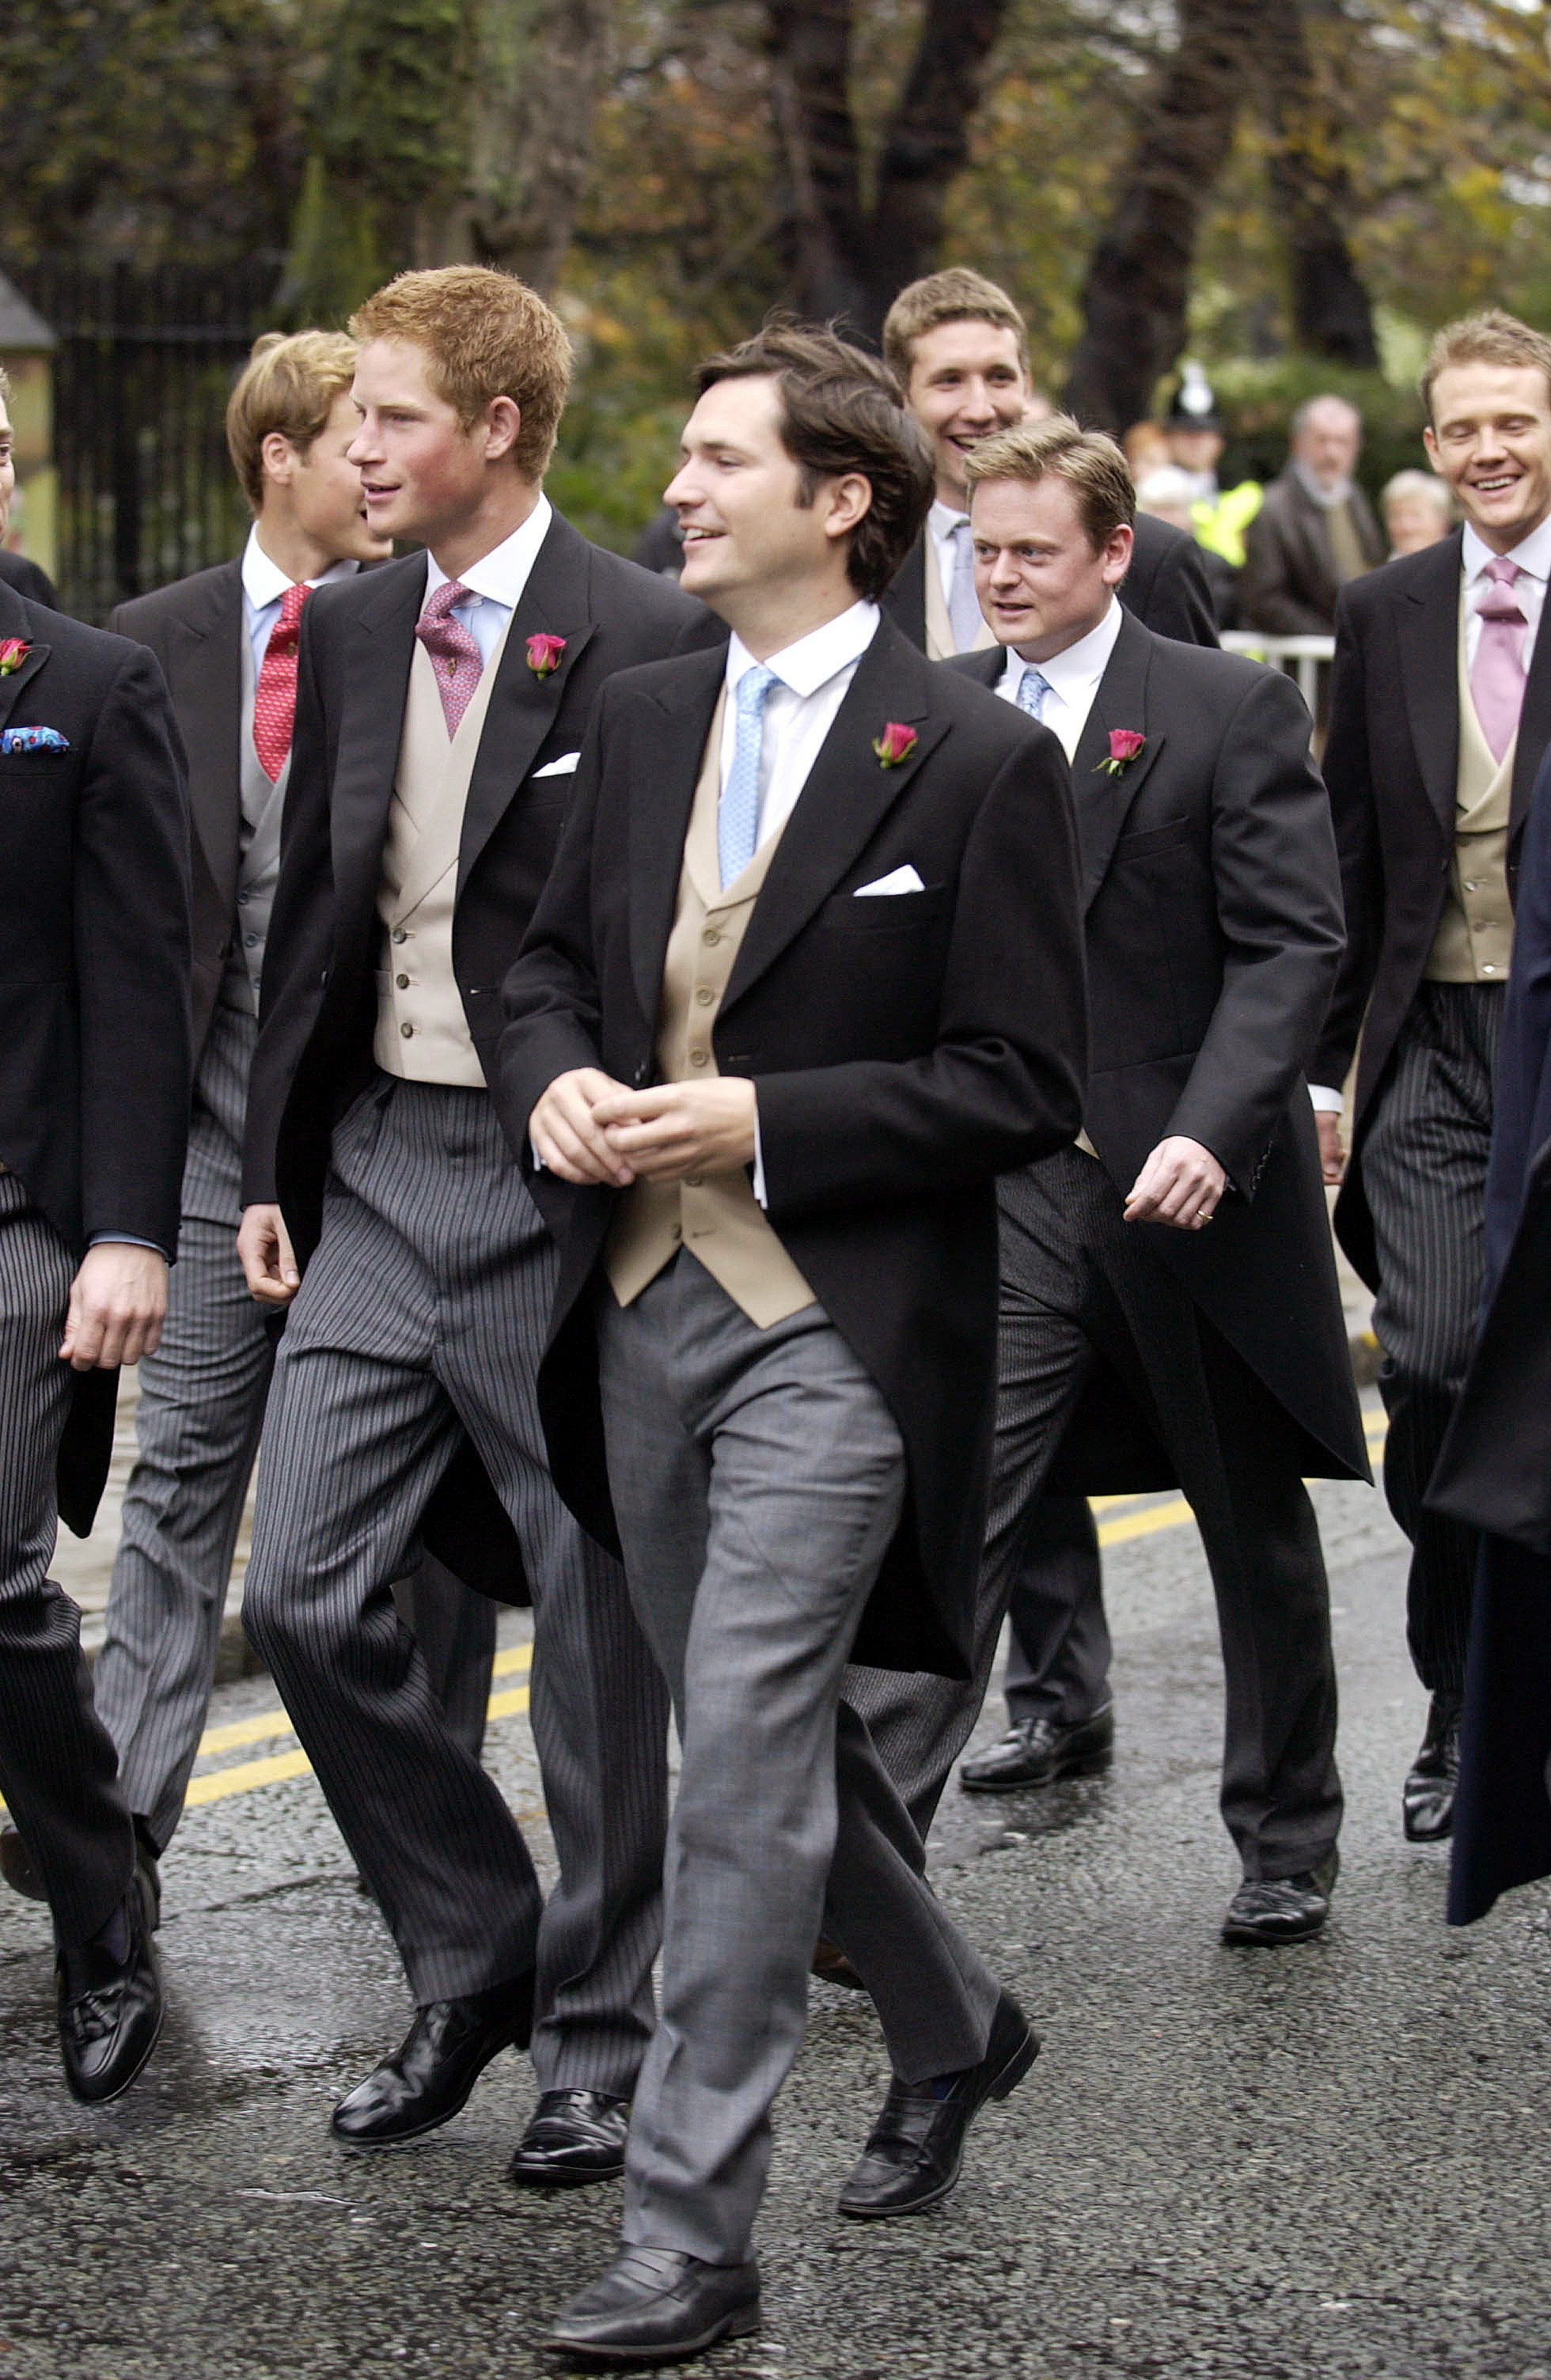 Le Prince Harry rejoint d'autres personnes en route pour le mariage de leurs amis à la cathédrale de Chester. | Source : Getty Images